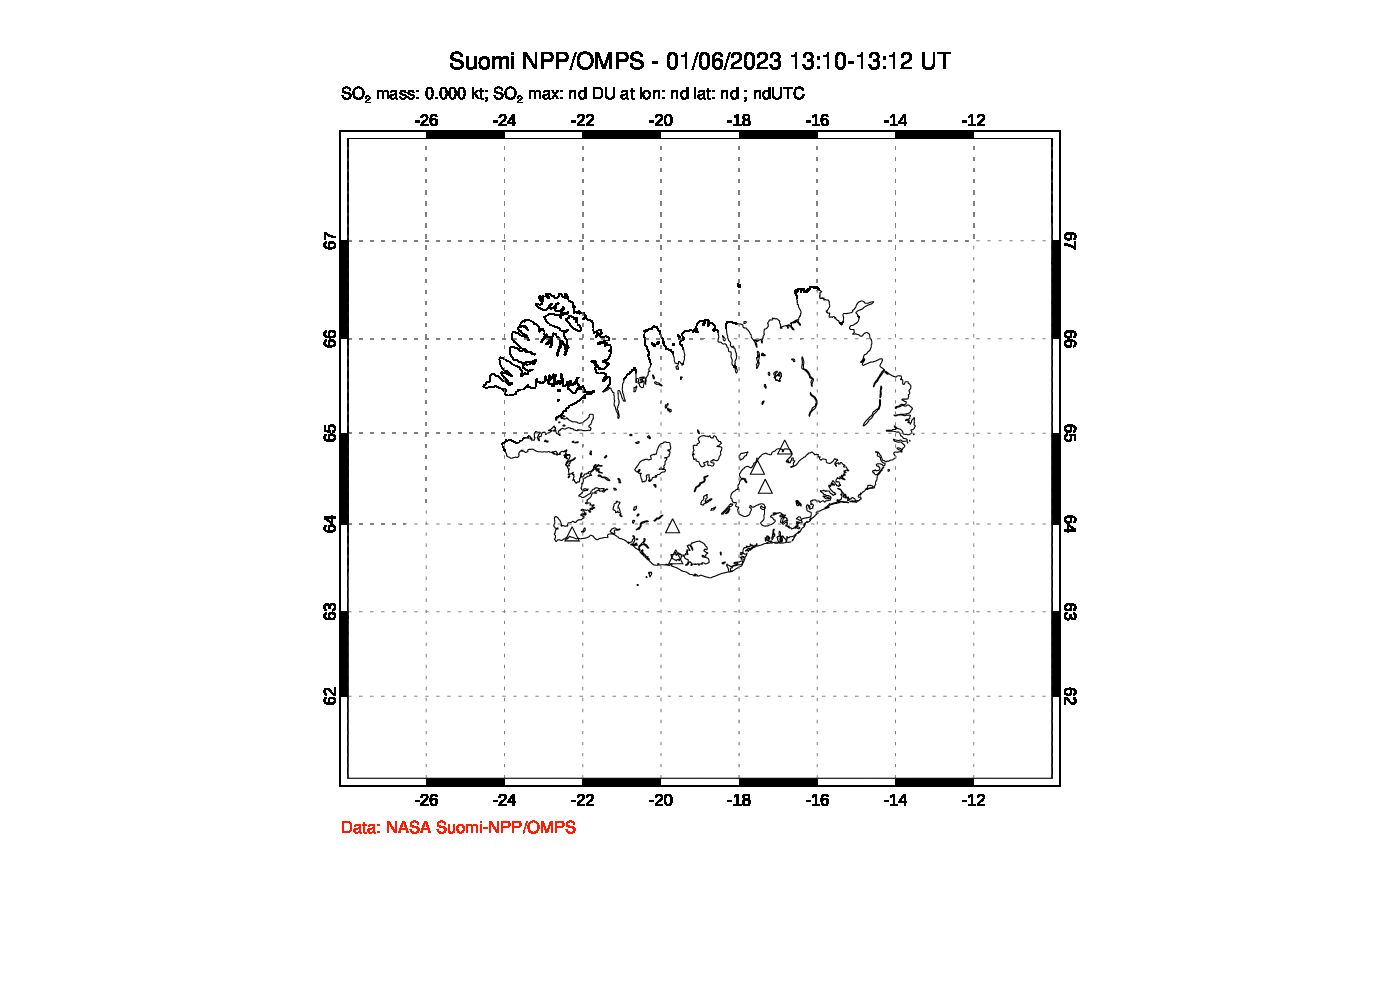 A sulfur dioxide image over Iceland on Jan 06, 2023.